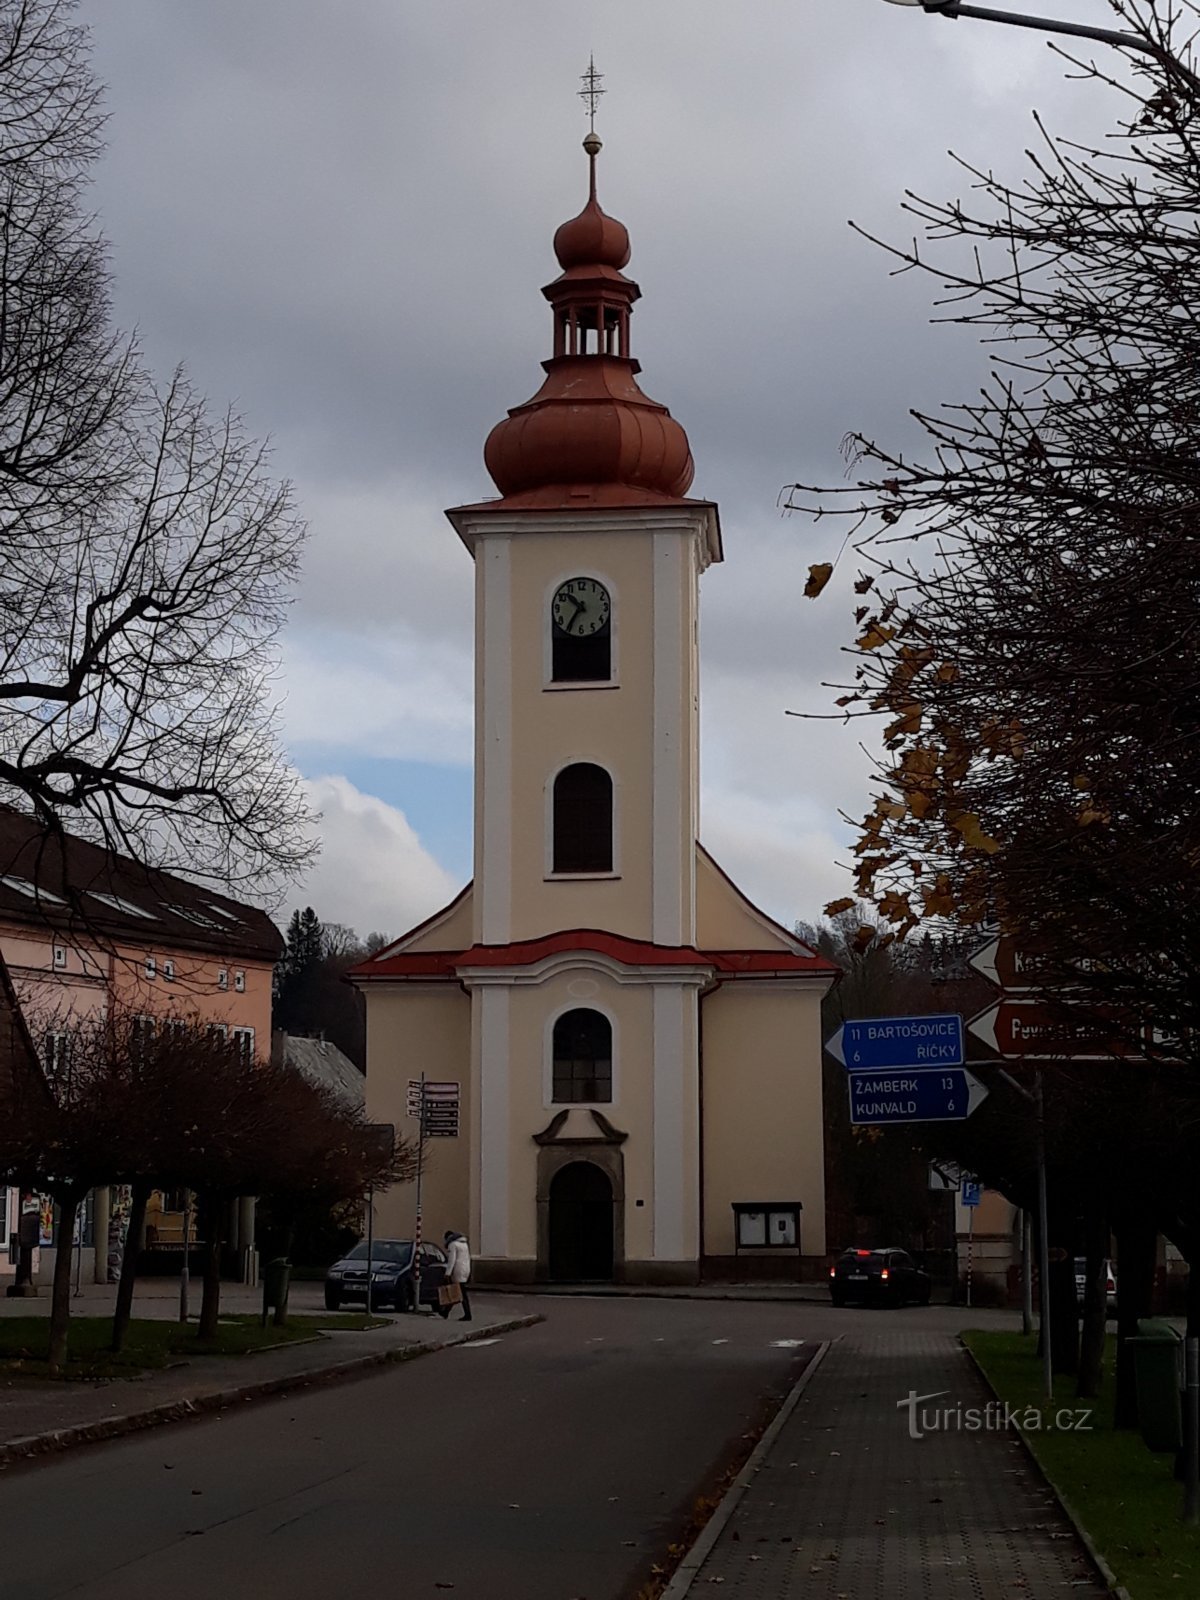 Rokytnice ở Orlické Hory - nhà thờ của tất cả các vị thánh